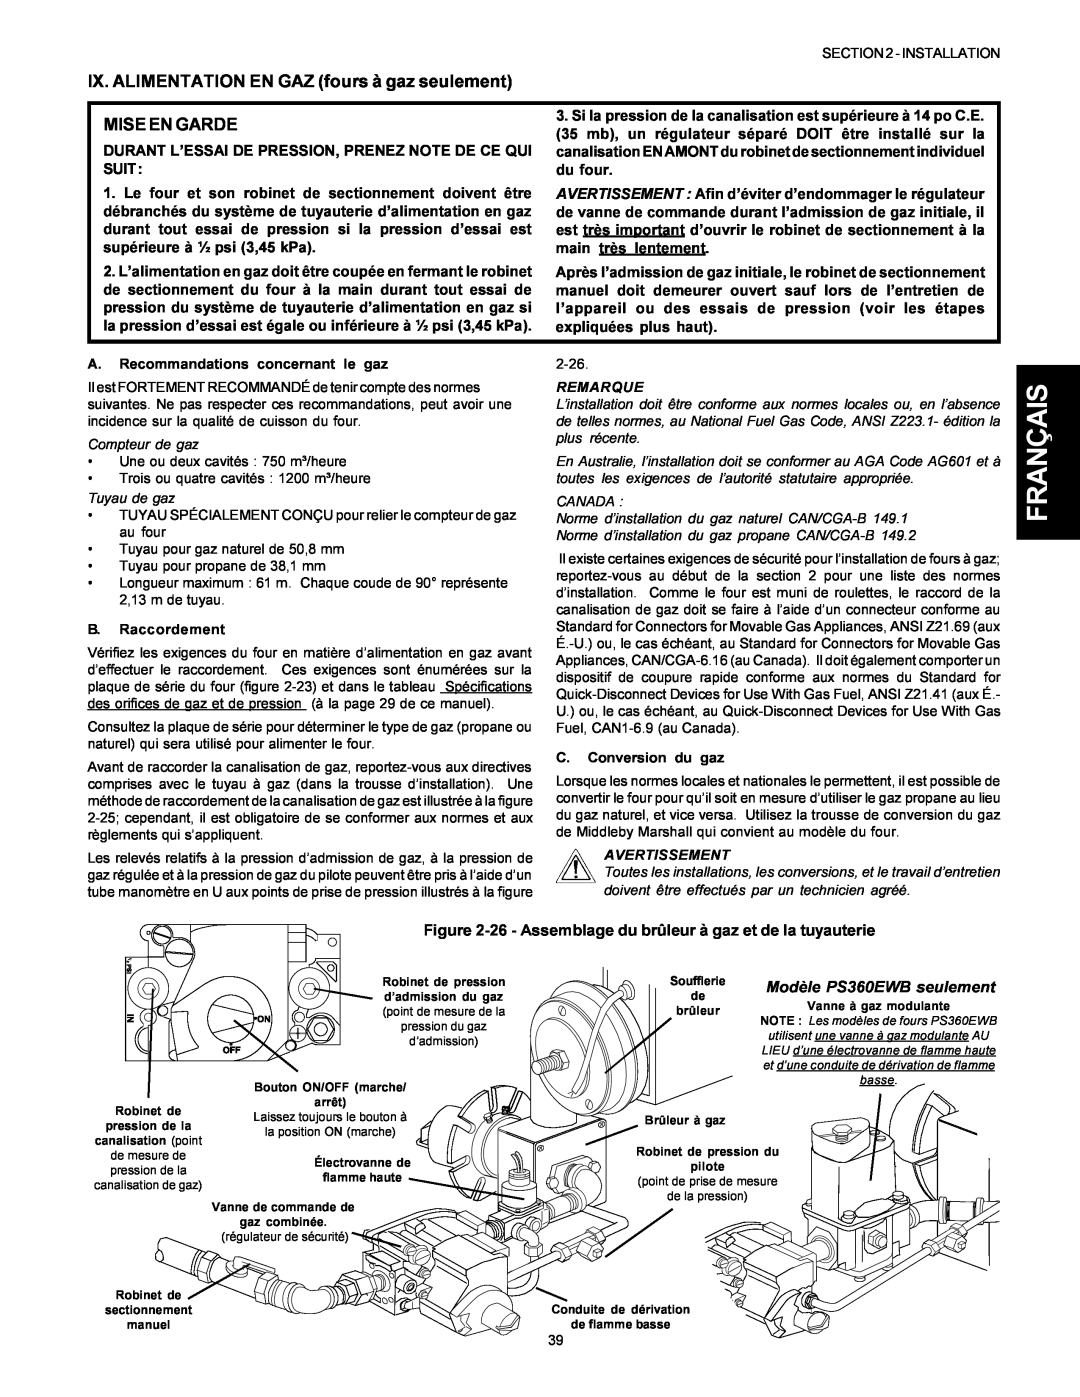 Middleby Marshall PS360S Français, 26 - Assemblage du brûleur à gaz et de la tuyauterie, Modèle PS360EWB seulement, Canada 